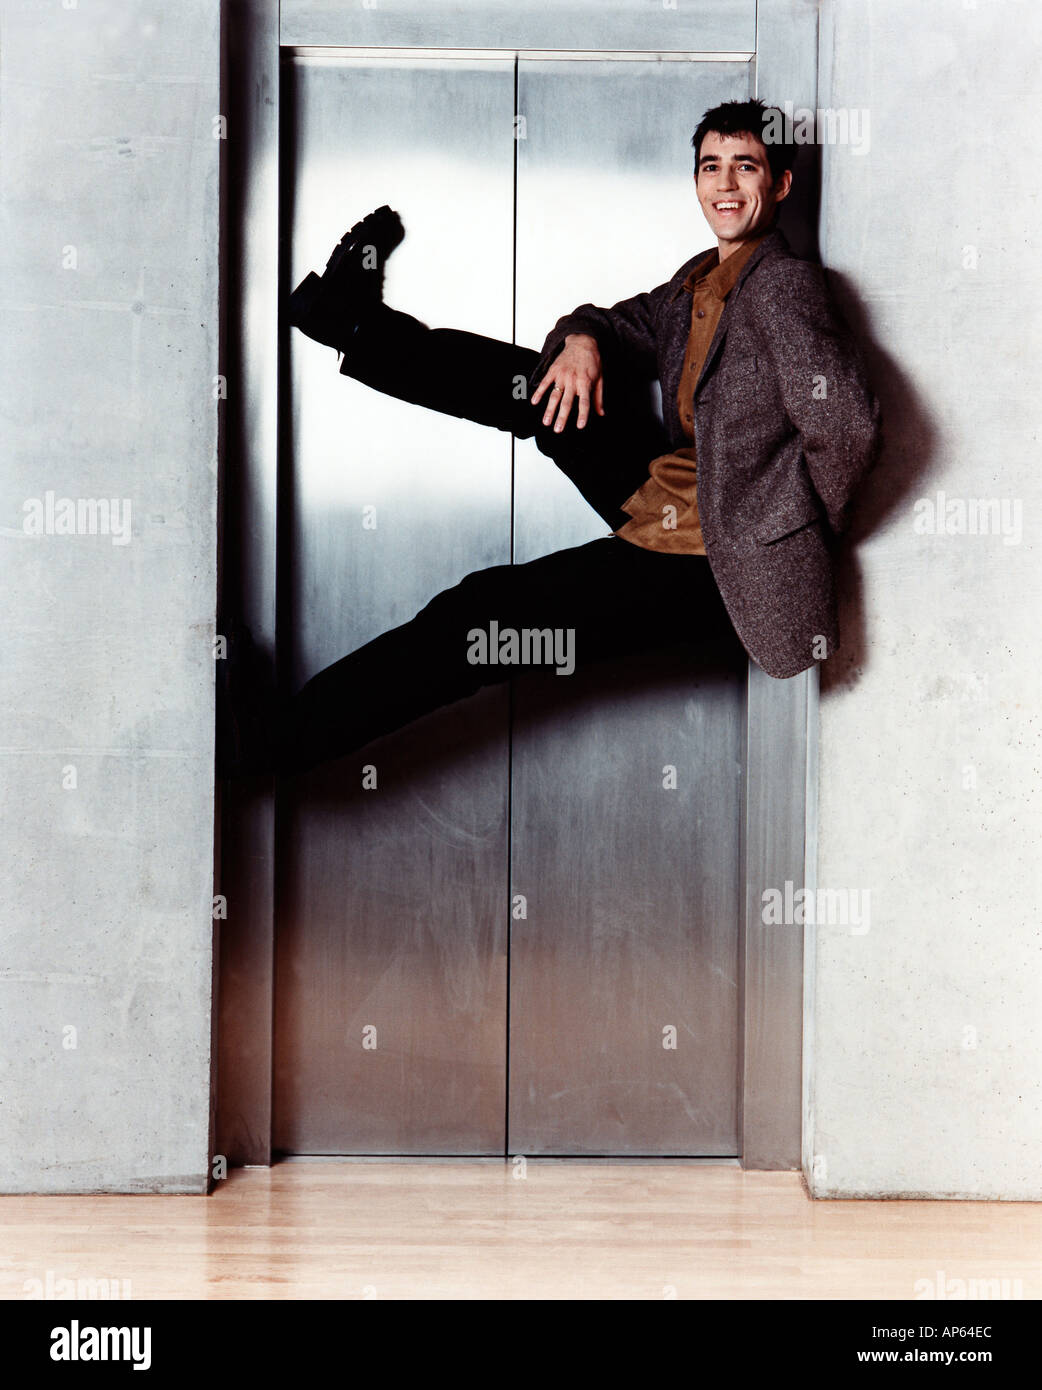 man hanging in elevator door Stock Photo